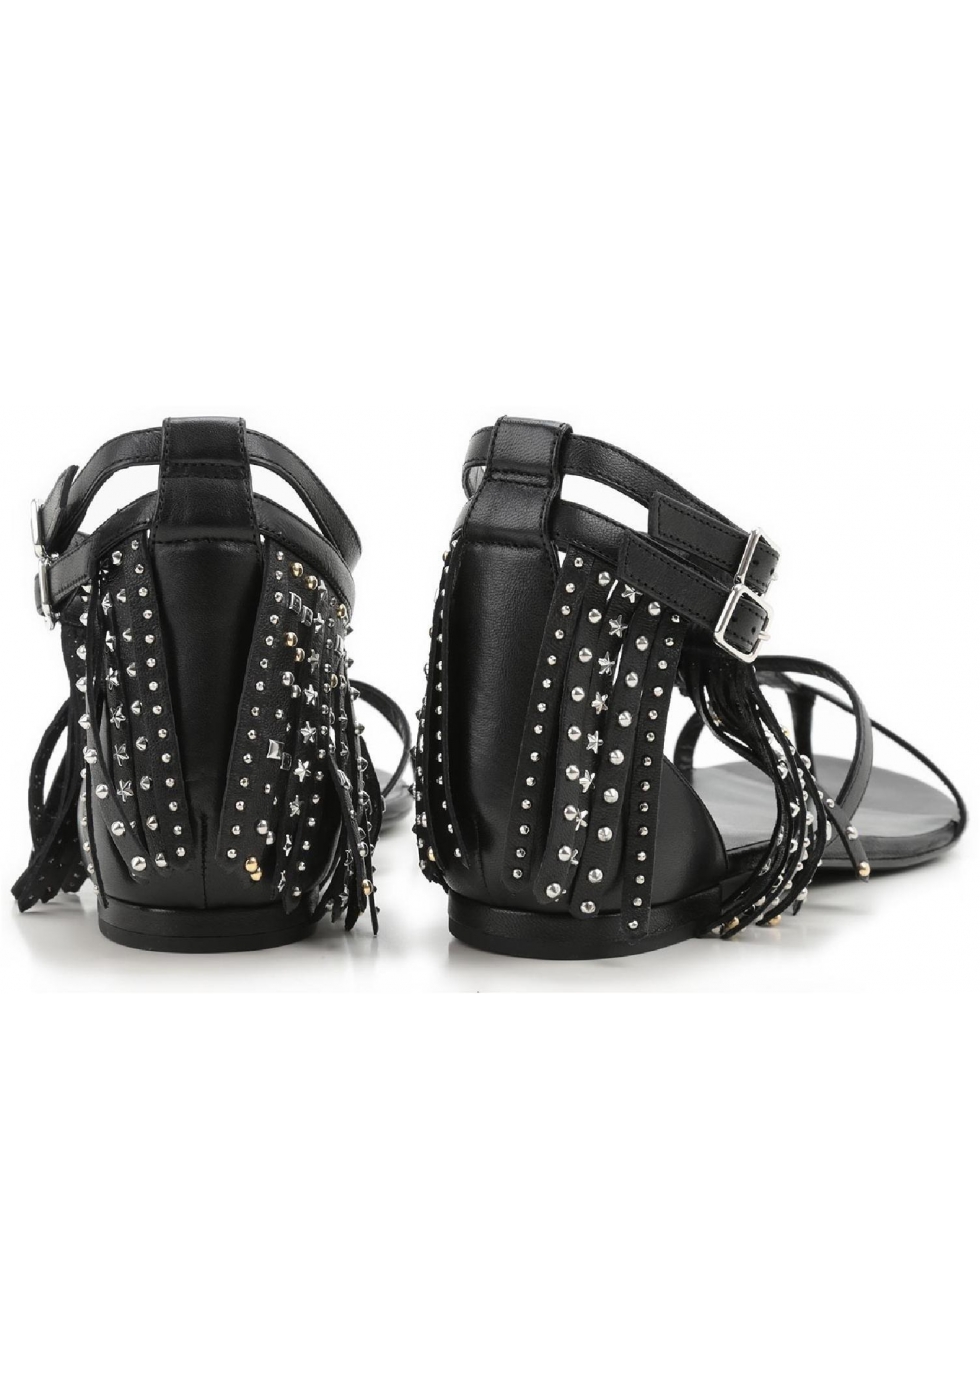 Saint Laurent flats sandals black leather fringe - Italian Boutique